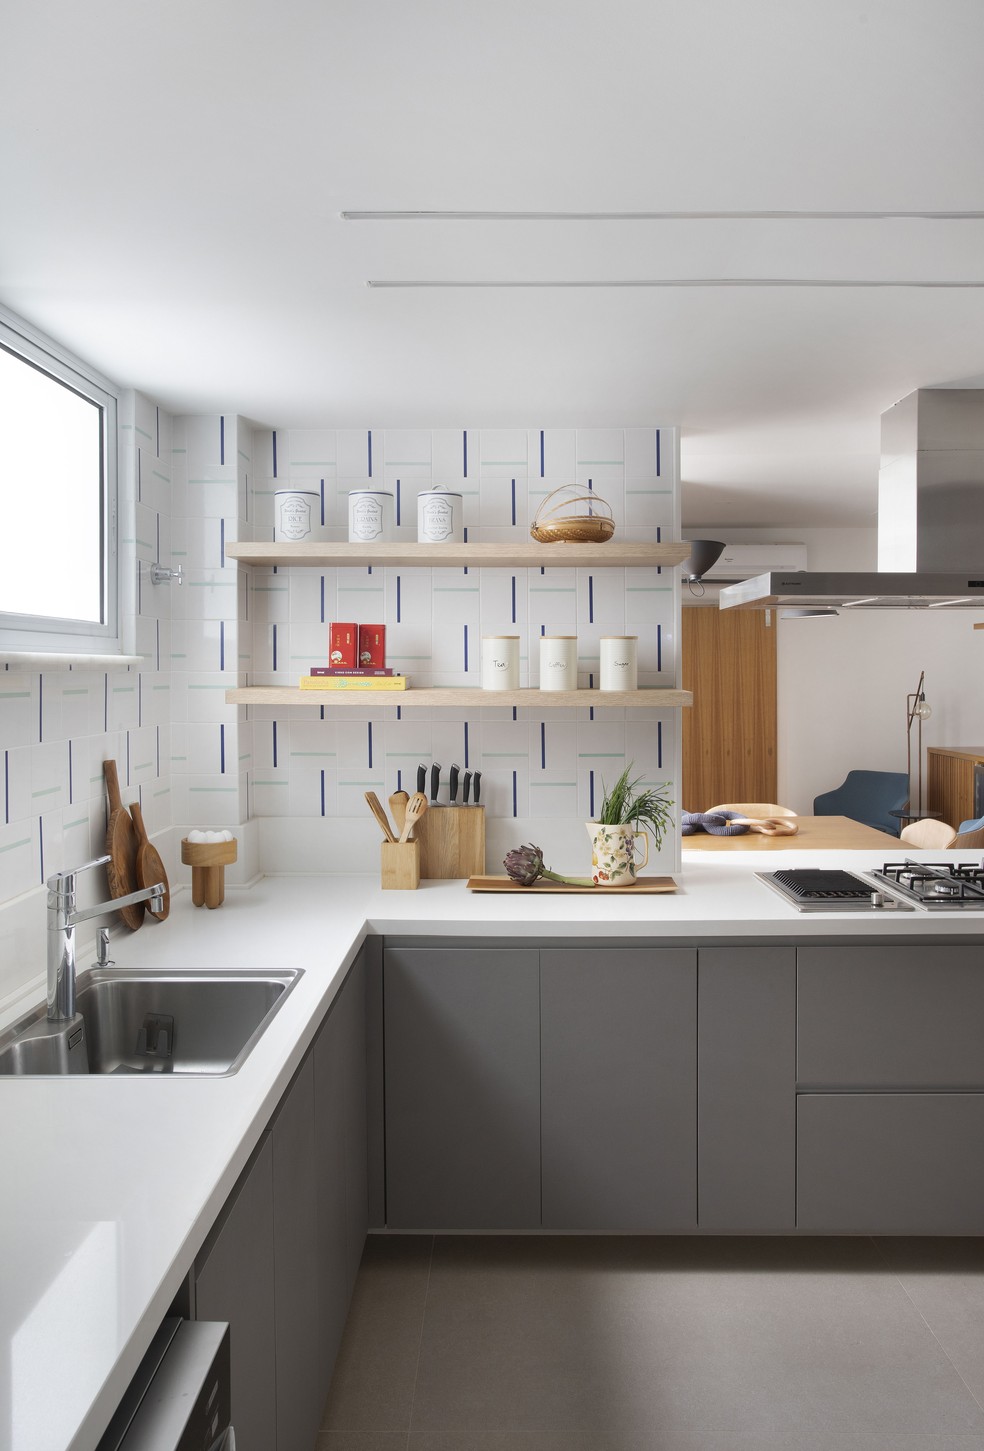 O backsplash da cozinha apresenta azulejos com detalhes geométricos e minimalistas em dois tons de azul — Foto: Juliano Colodeti/MCA Estúdio